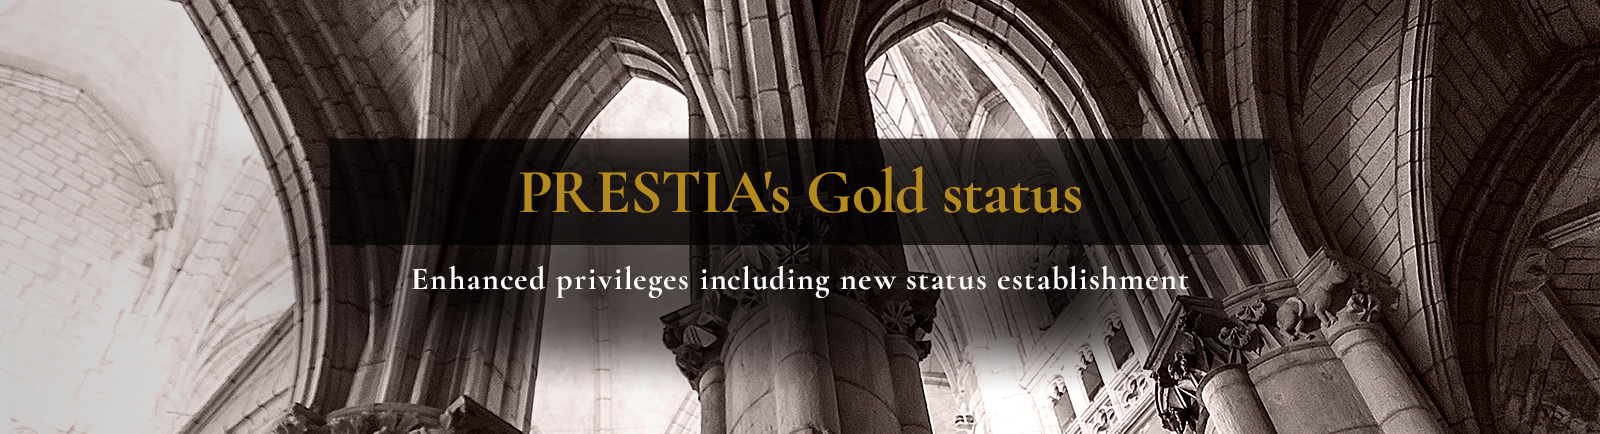 PRESTIA's Gold status Enhanced privileges including new status establishment